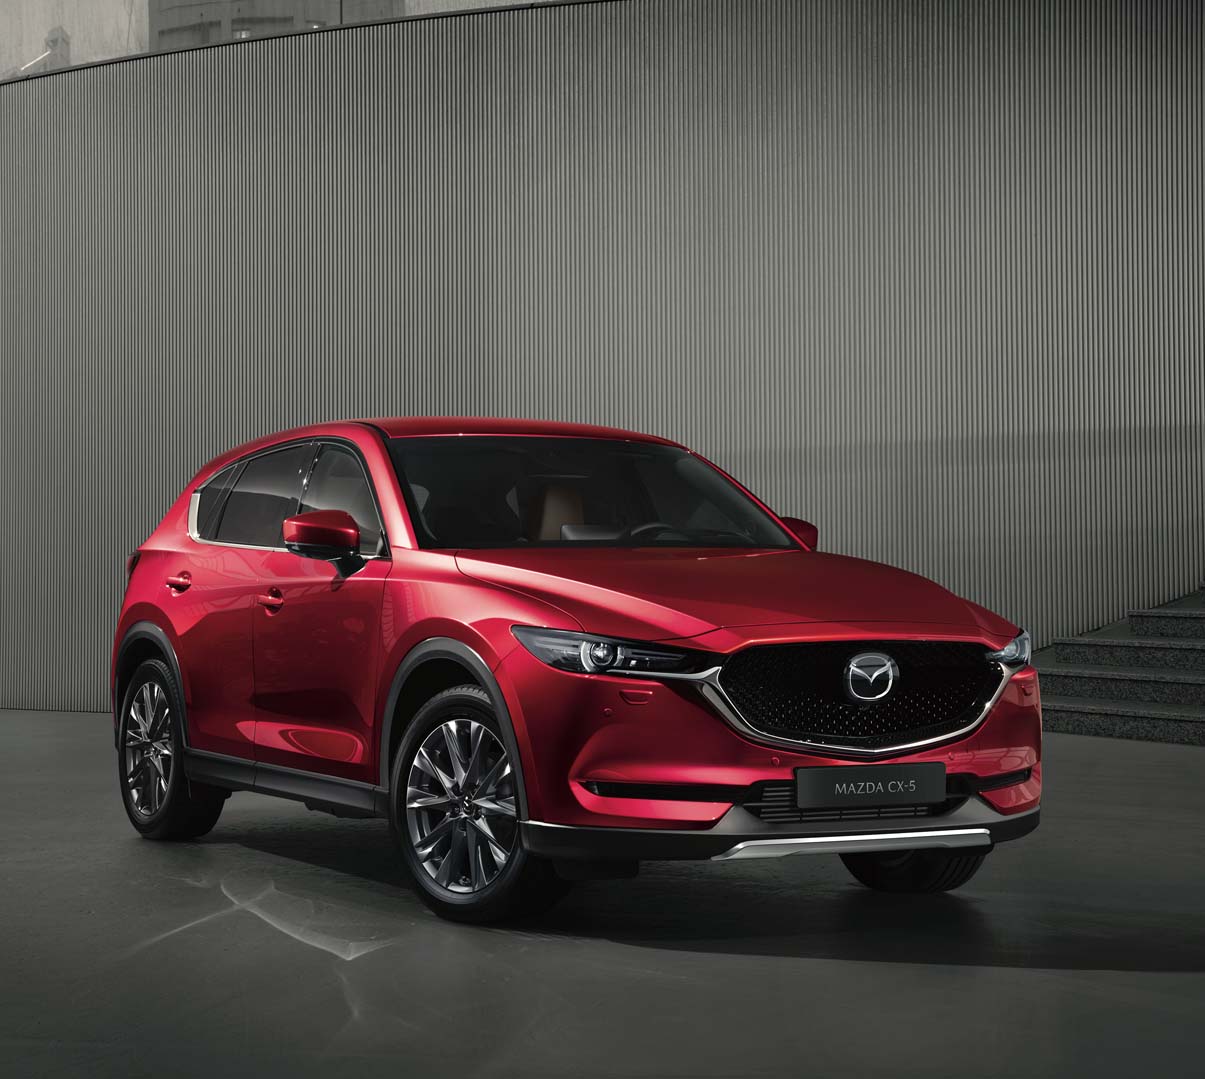 Αναδείξτε τον σπορ χαρακτήρα του οχήματός σας με το κιτ αμαξώματος που έχει σχεδιαστεί για το Mazda CX-5.